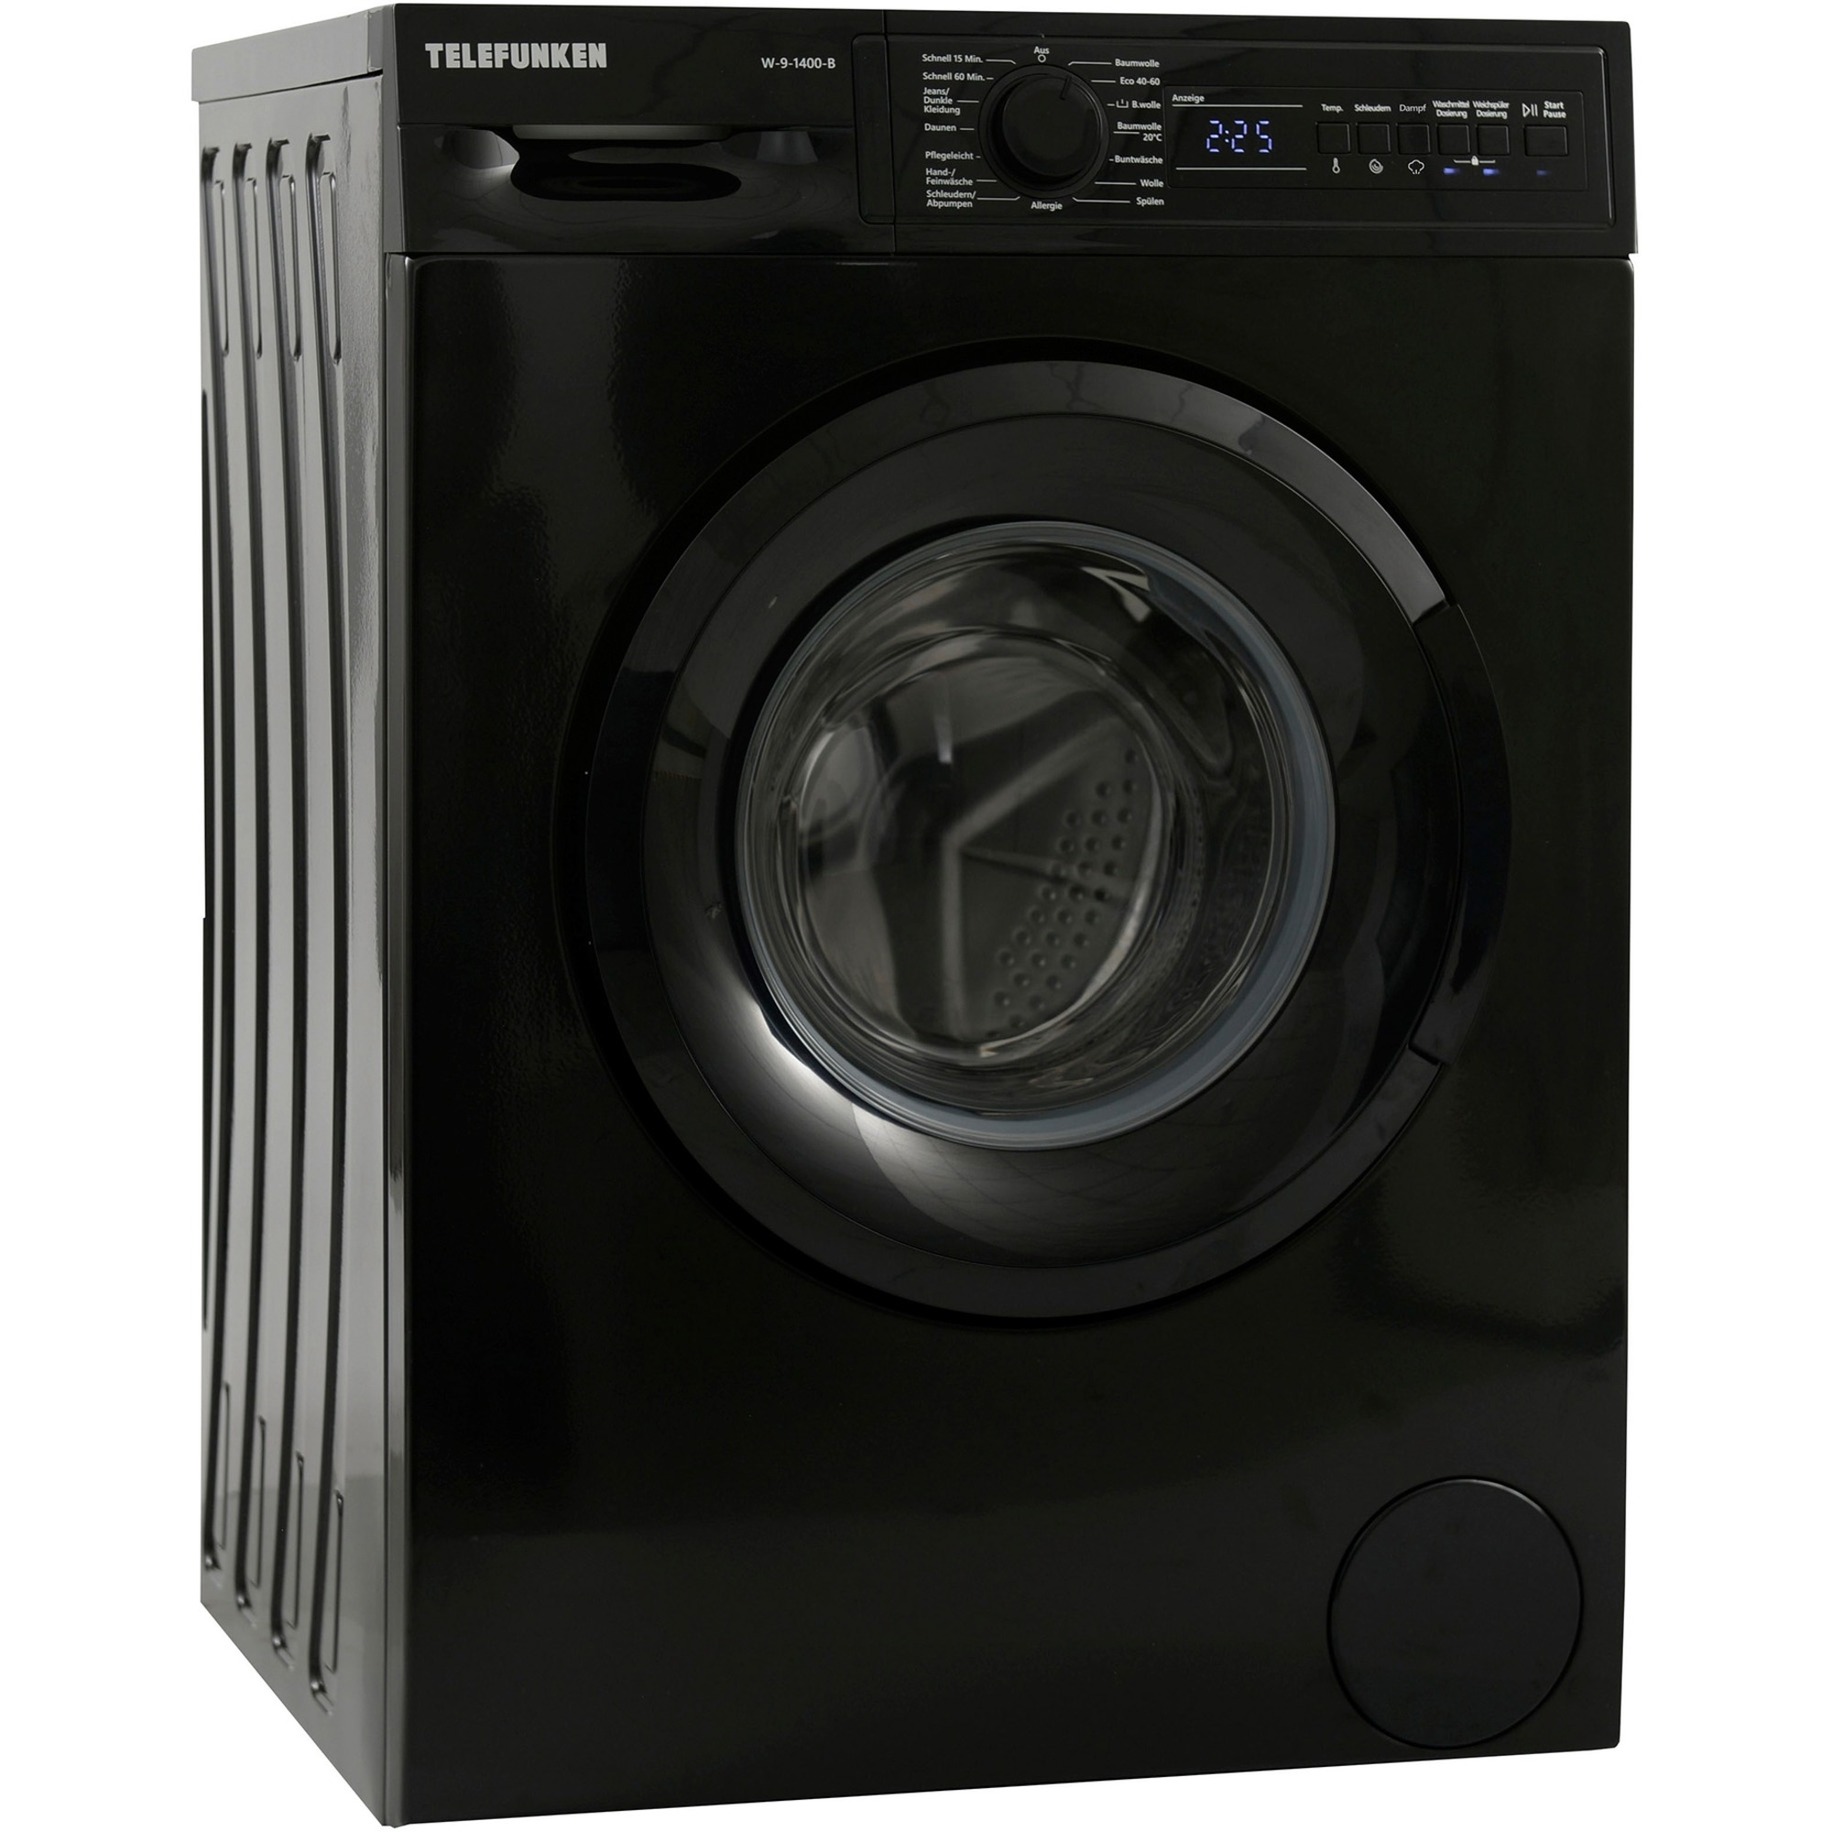 W-9-1400-B, Waschmaschine von Telefunken